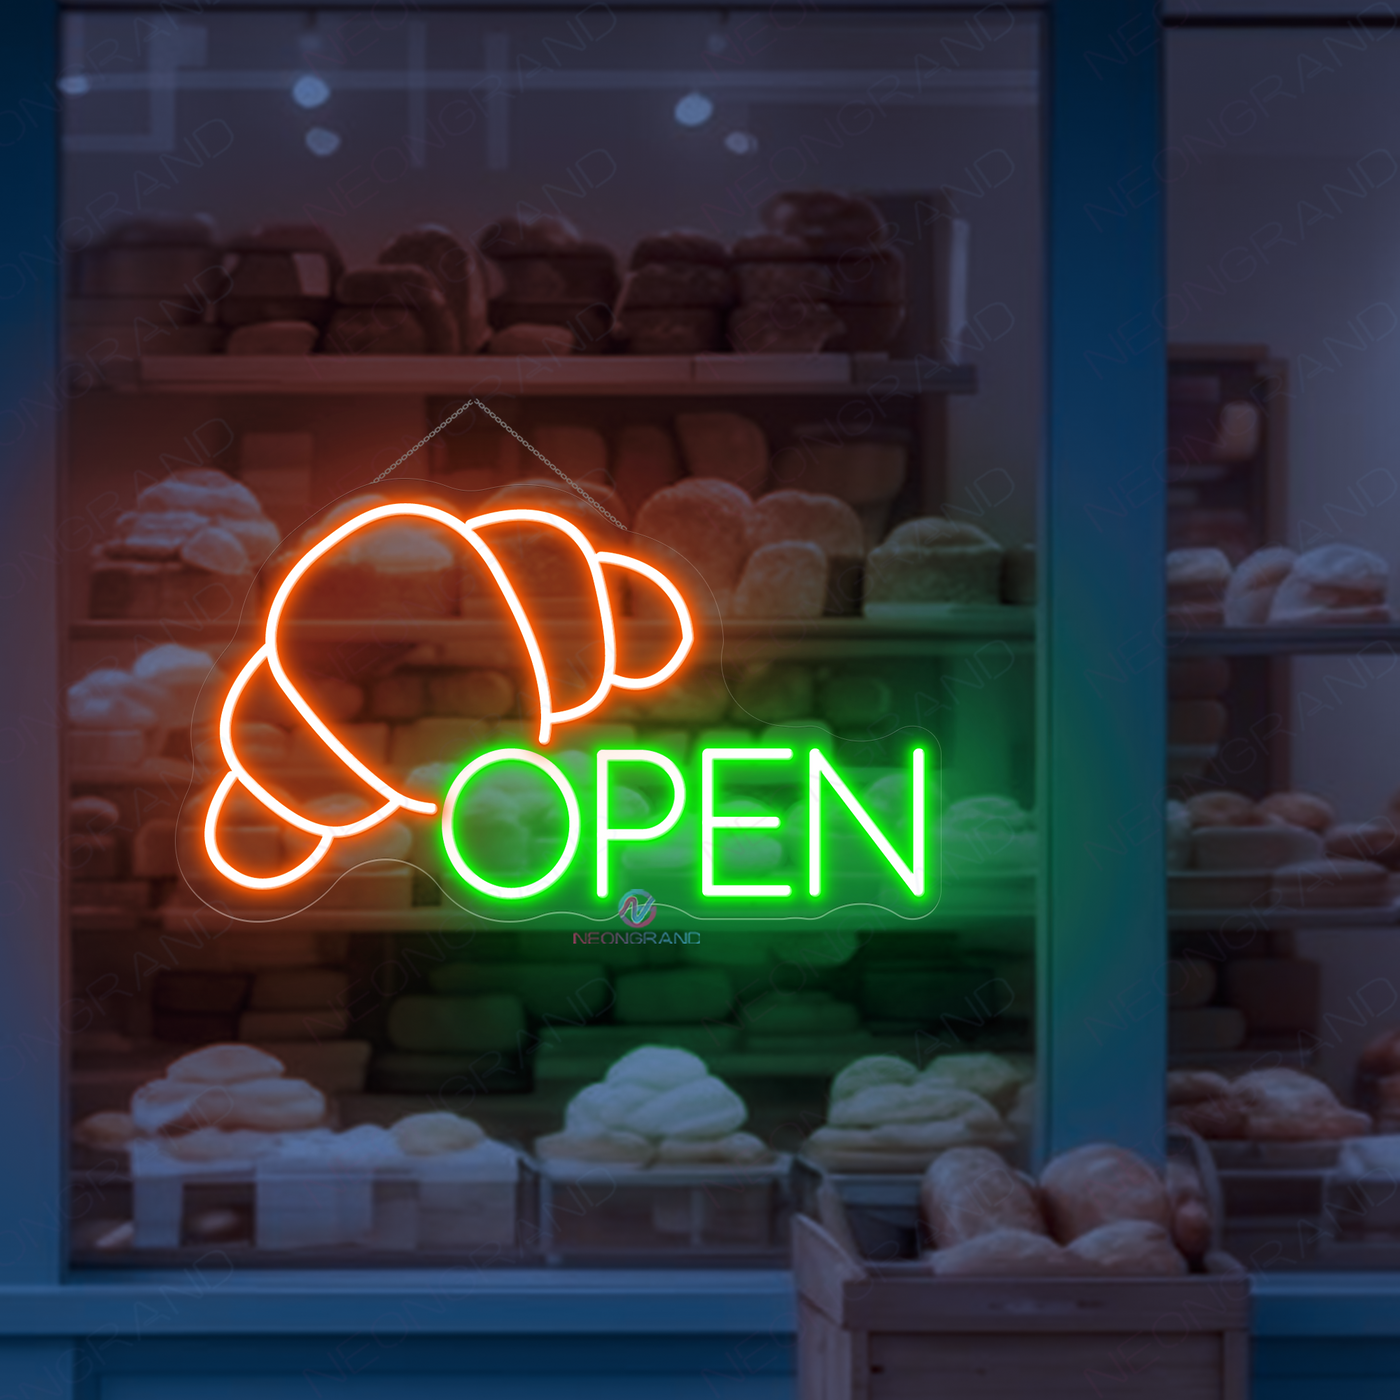 Bakery Open Neon Sign Business Led Light